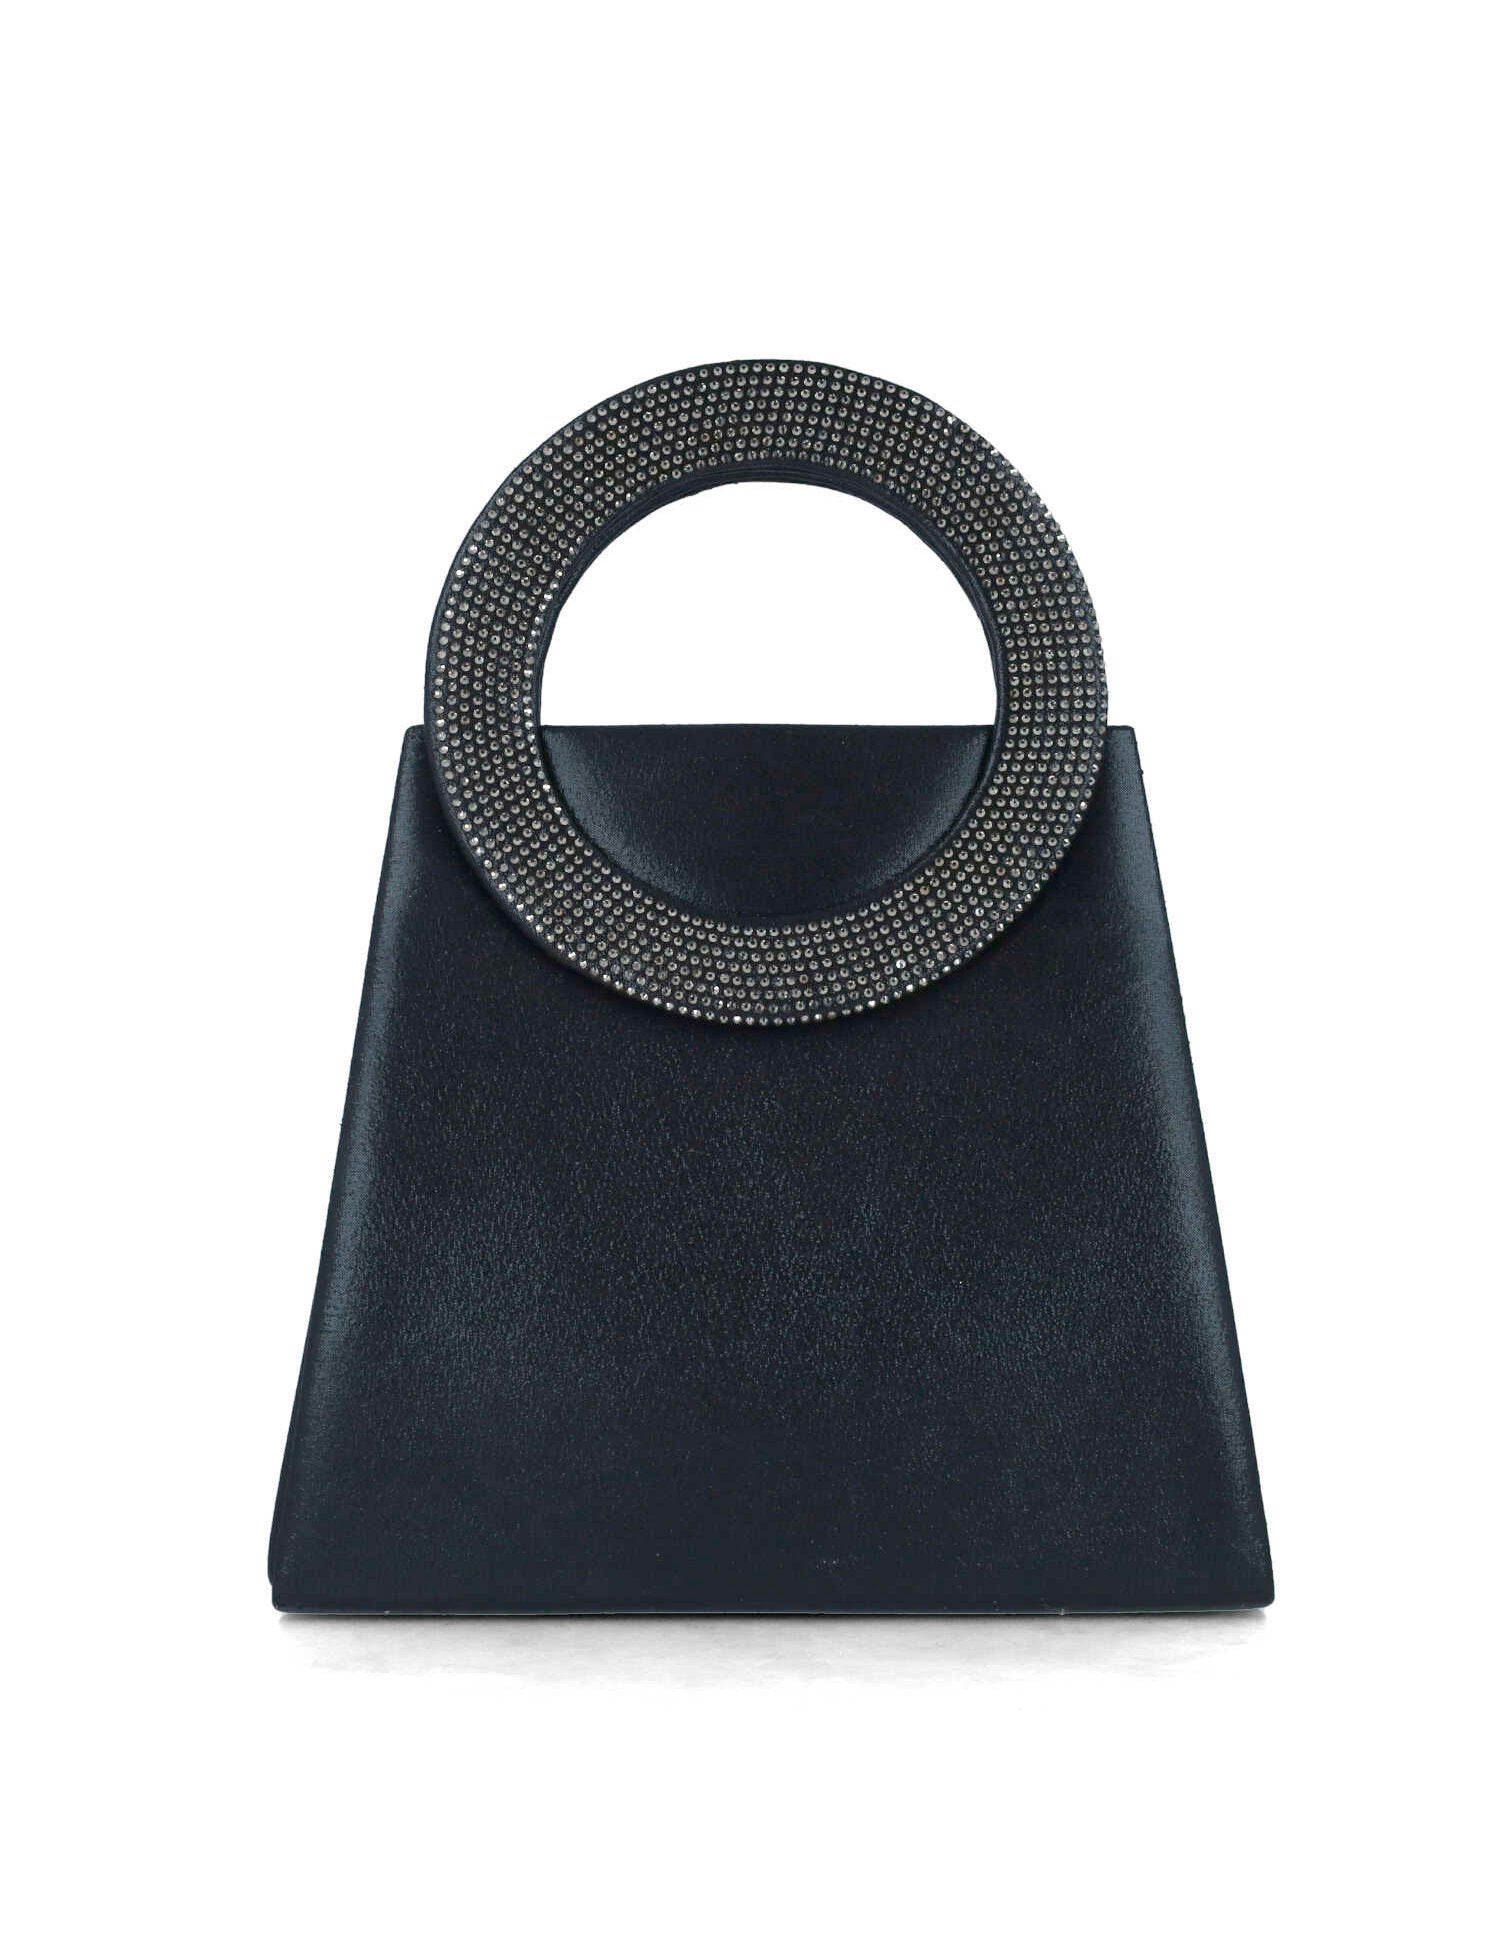 Black Handbag With Embellished Hand Strap_85508_01_03